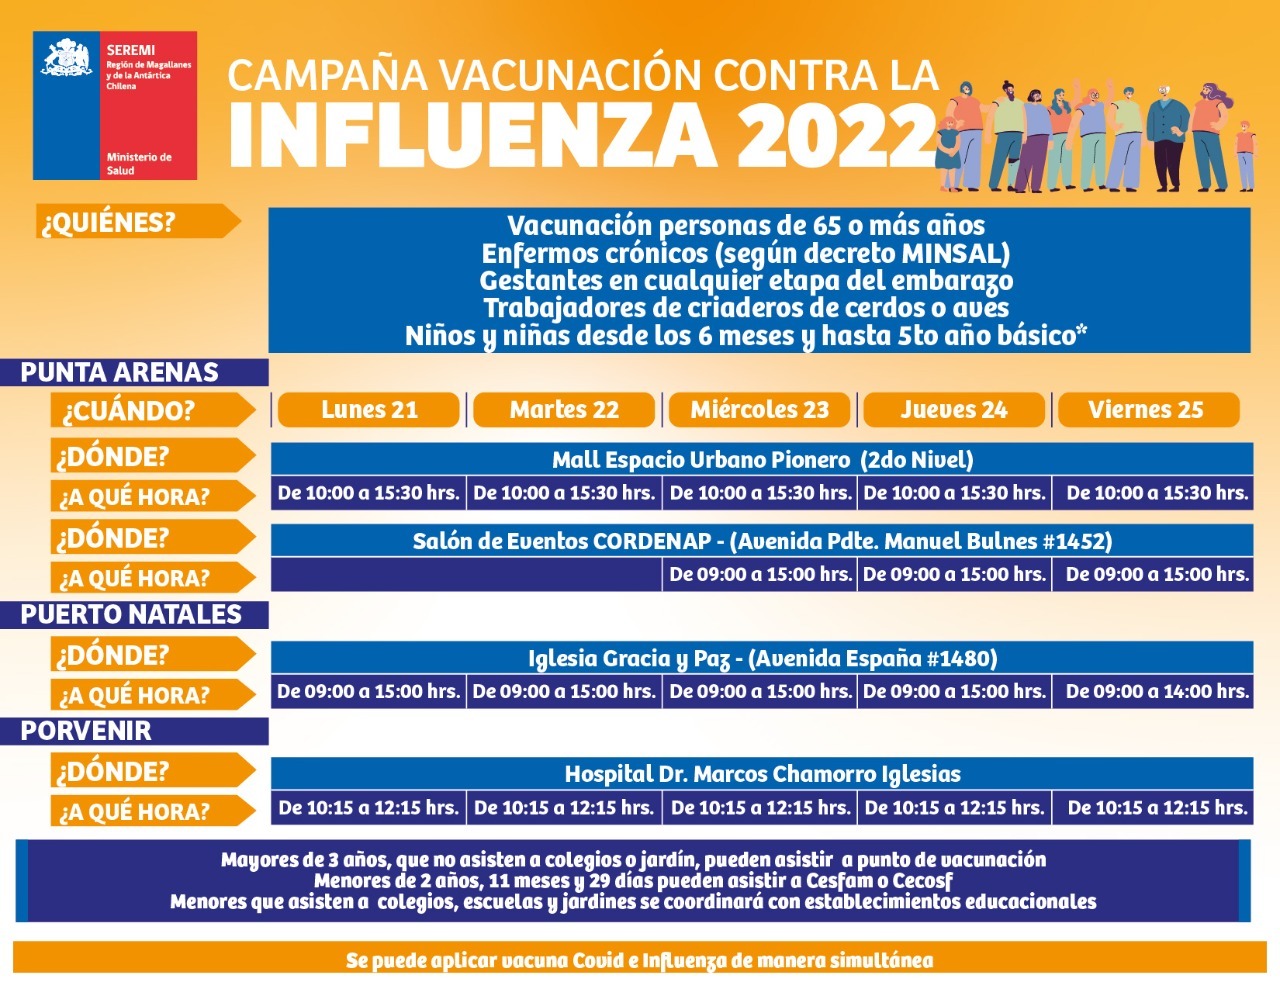 Calendario de vacunación contra la influenza: semana del 21 al 25 marzo en Punta Arenas, Puerto Natales y Porvenir